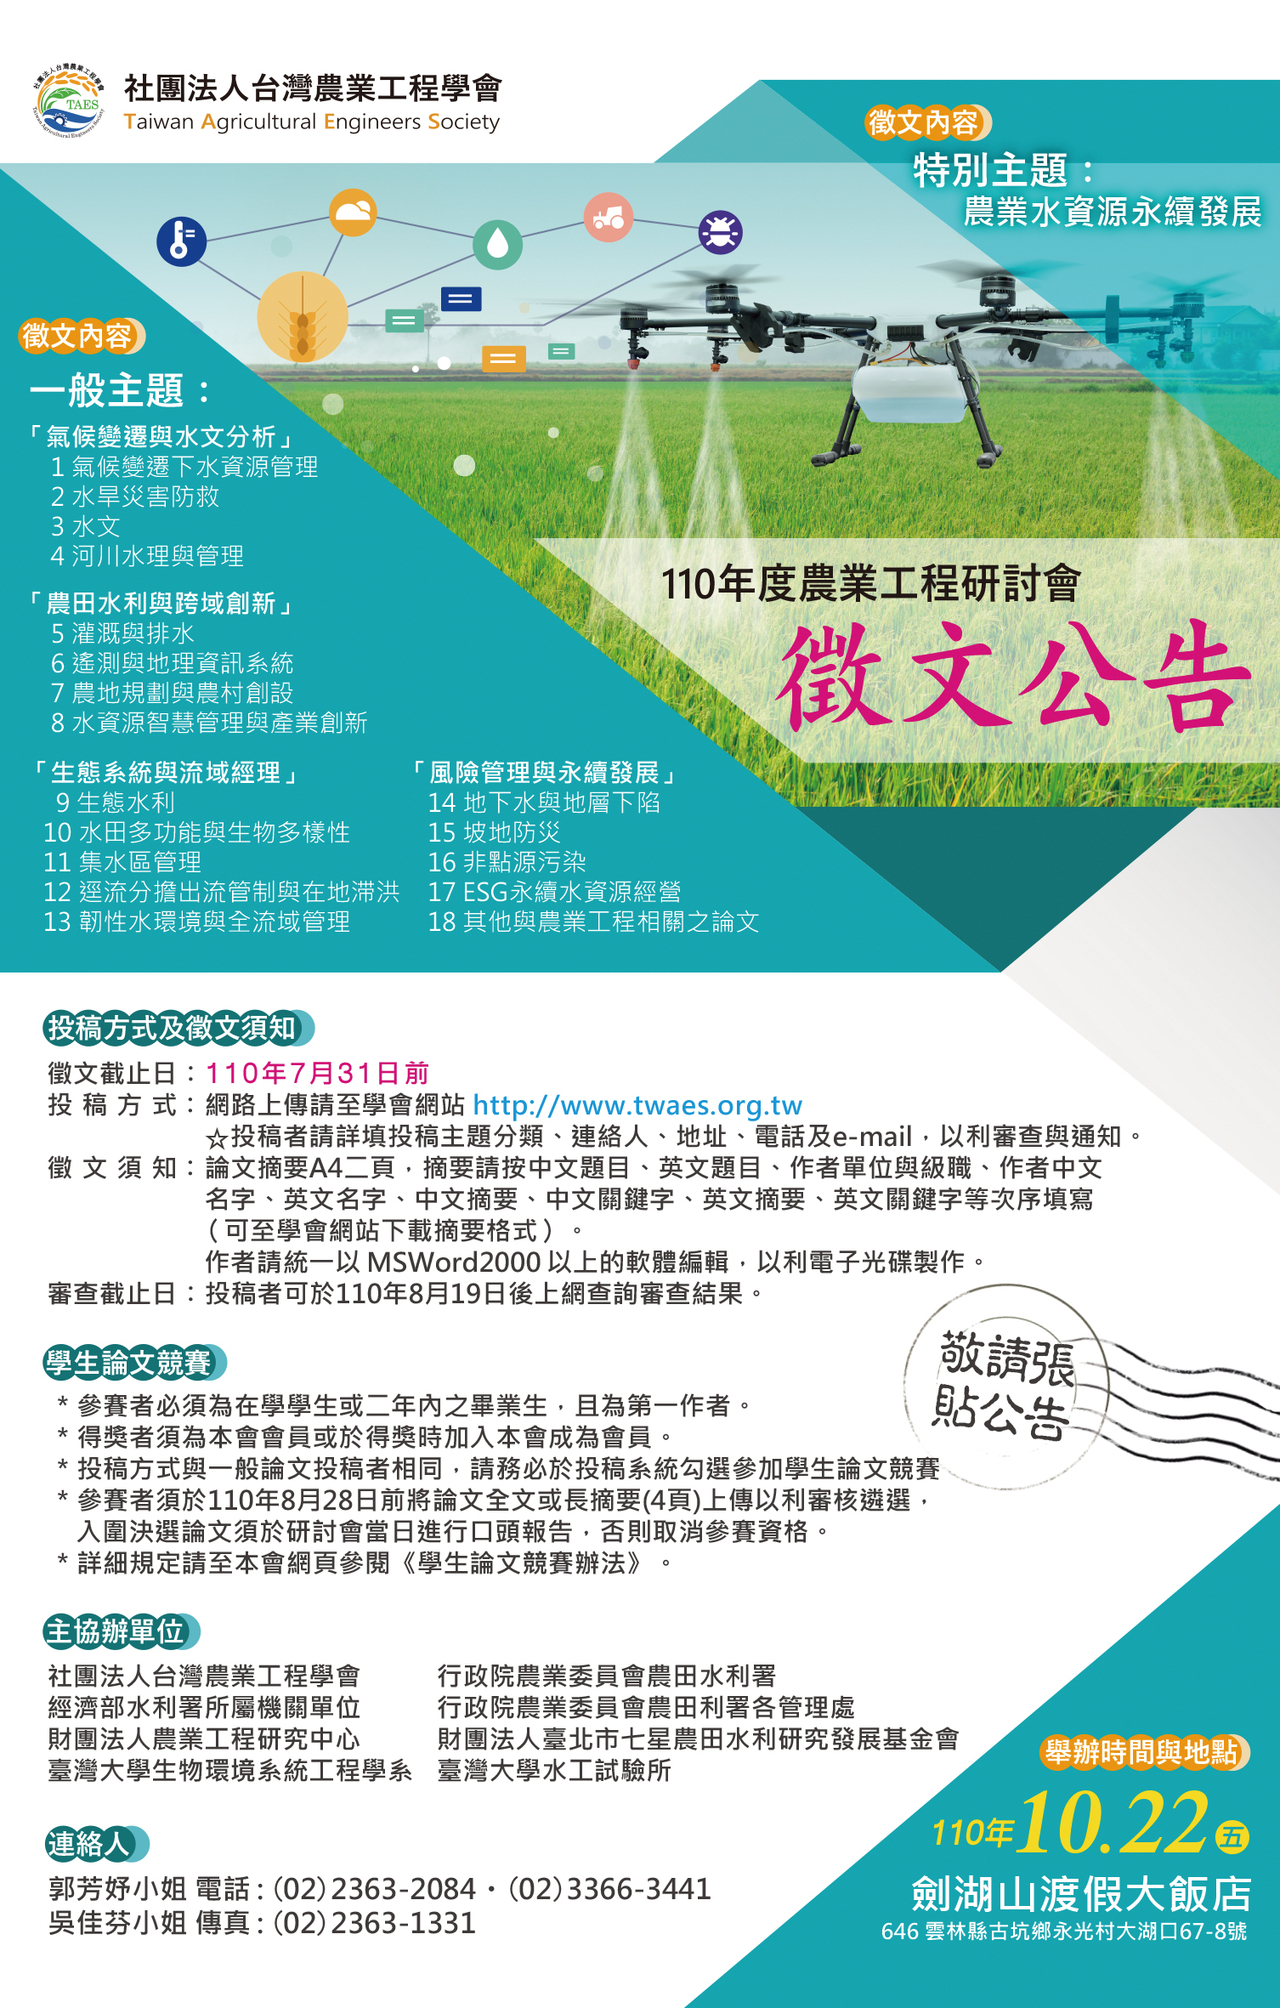 110 年度台灣農業工程學會徵文海報